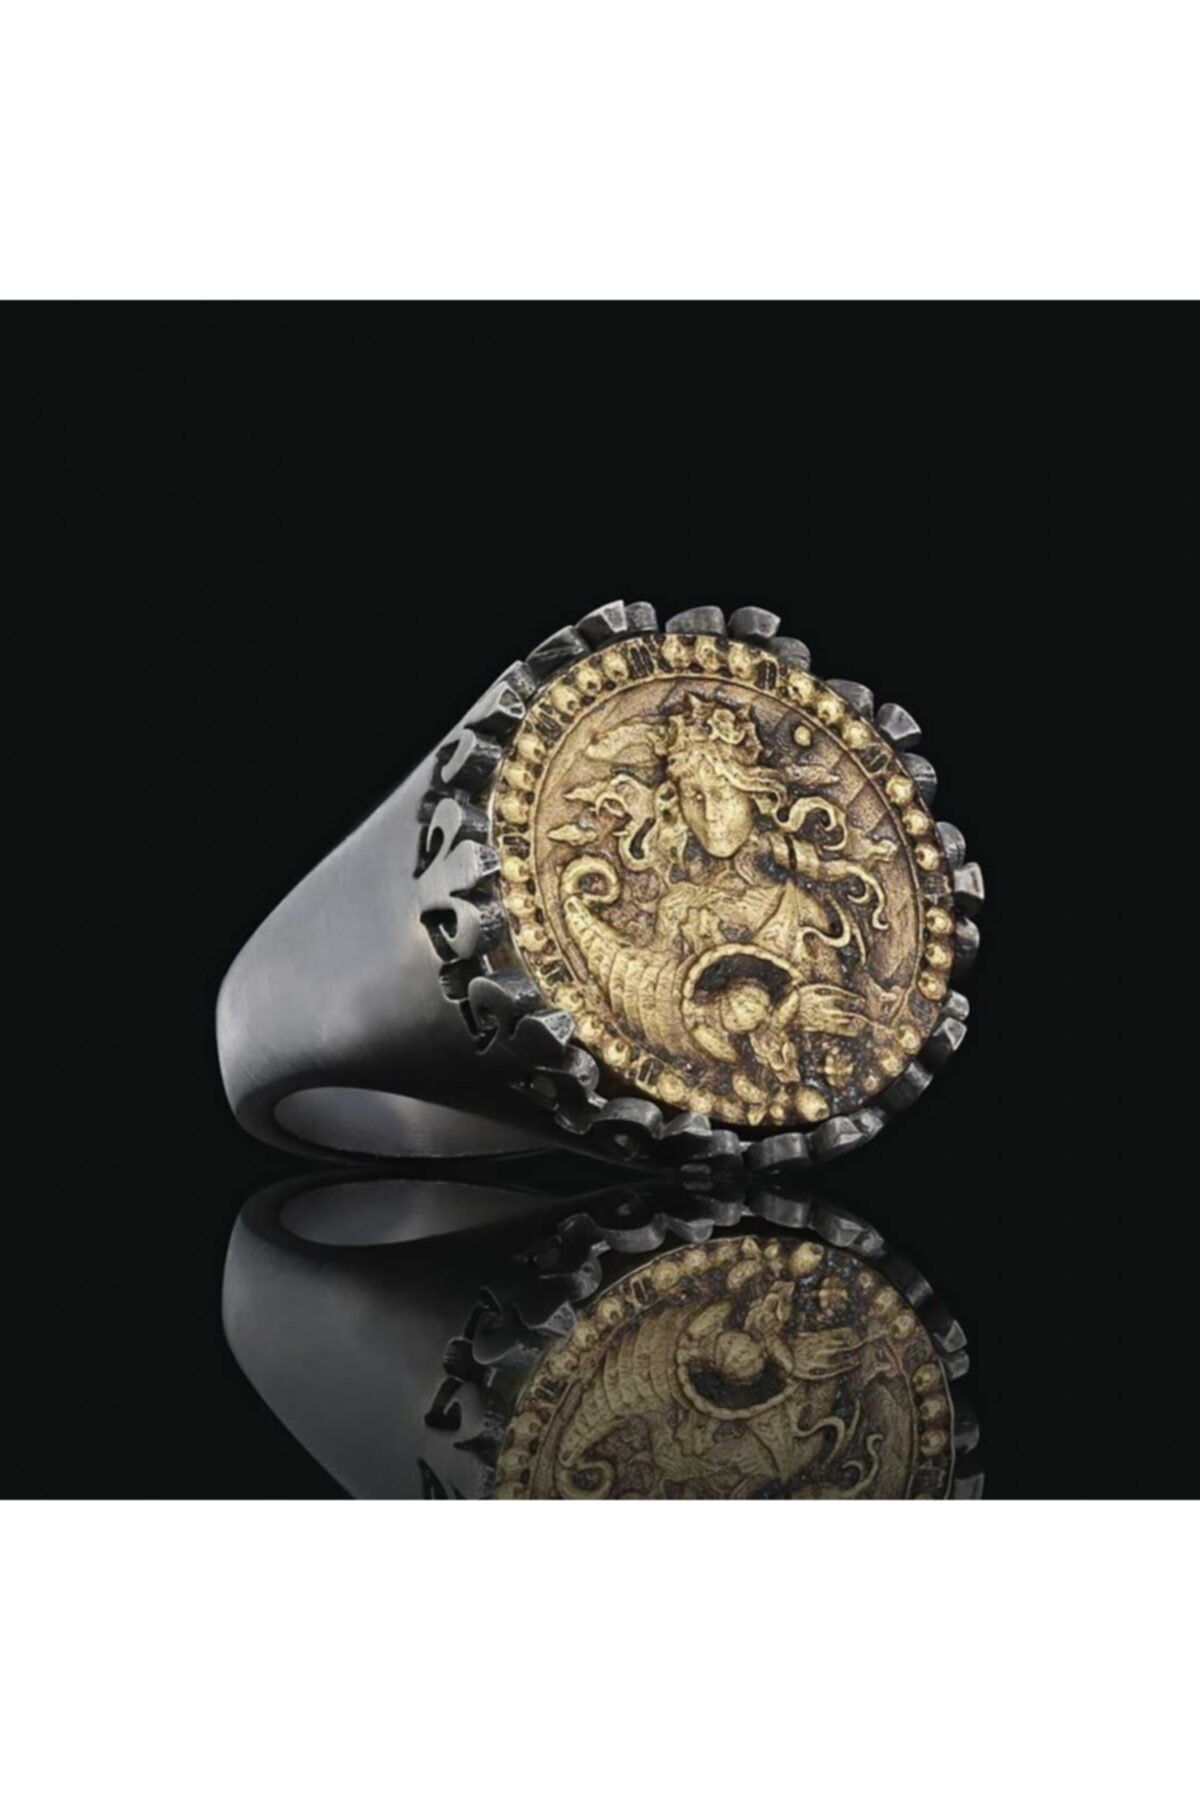 ELMAS İŞ Başak Burcu Özel Tasarım 925 Ayar Gümüş Üzeri Siyah Rodyum Kaplama Koleksiyon Yüzük